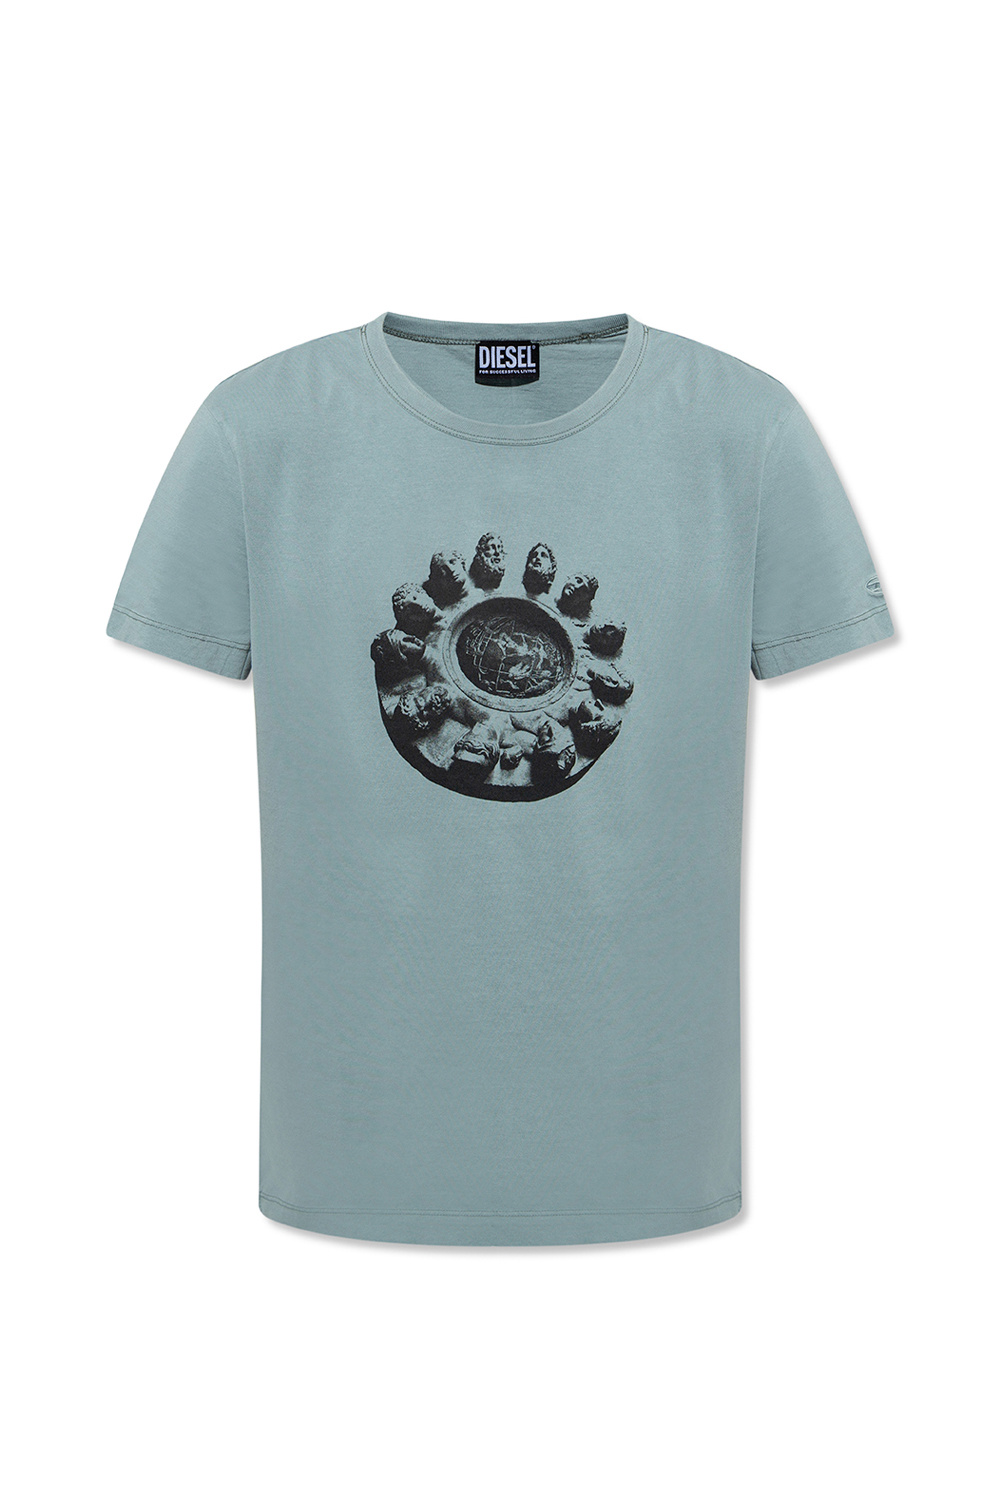 Diesel 'T-Diegor' T-shirt | Men's Clothing | IetpShops